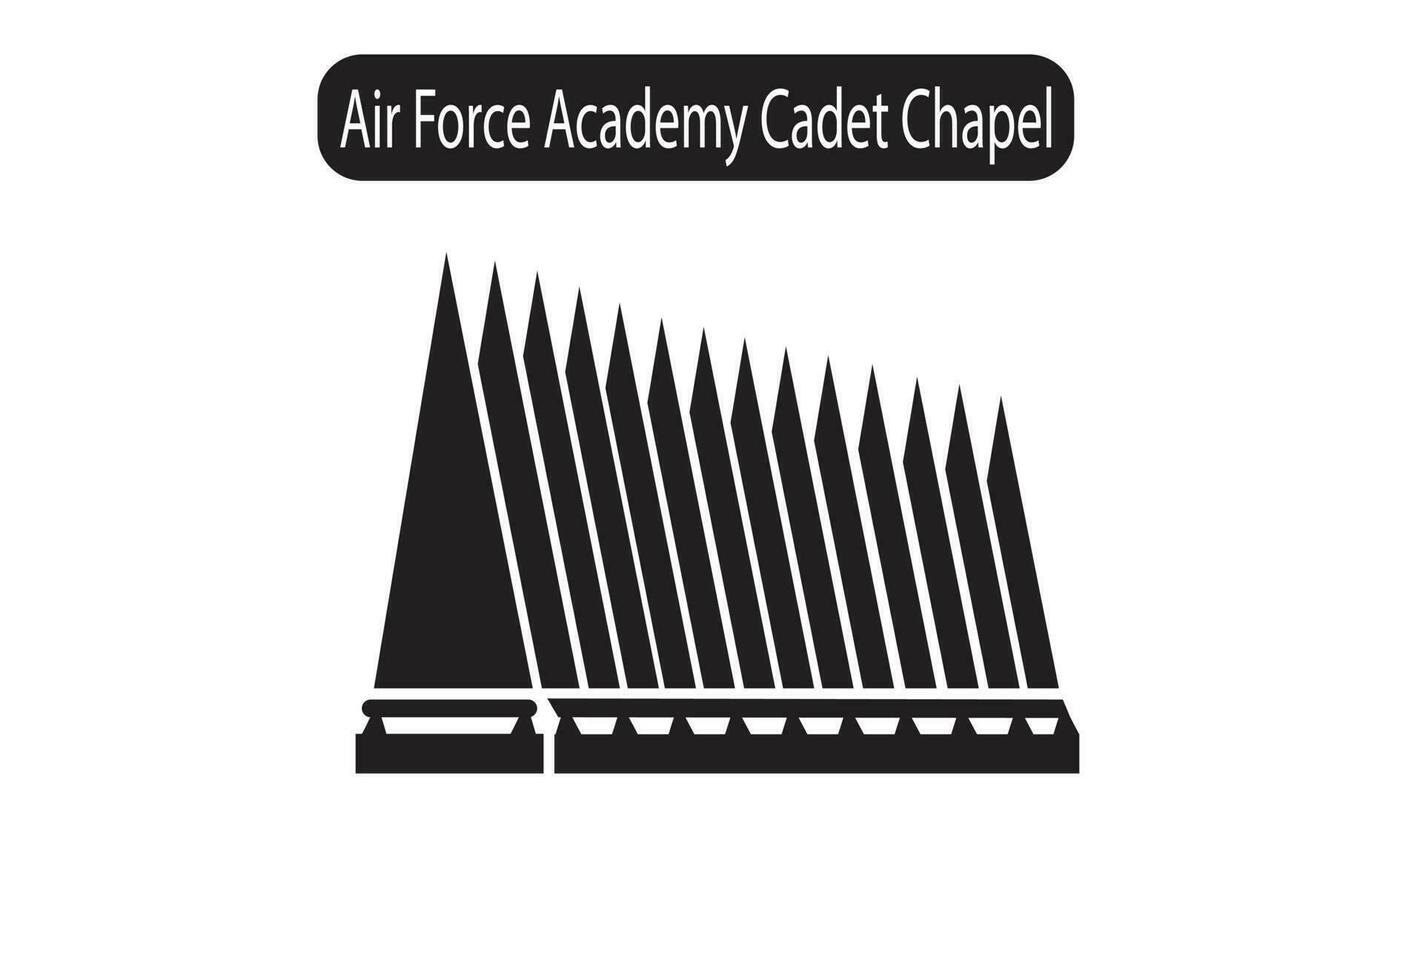 aria vigore accademia cadetto cappella silhouette icona vettore illustrazione